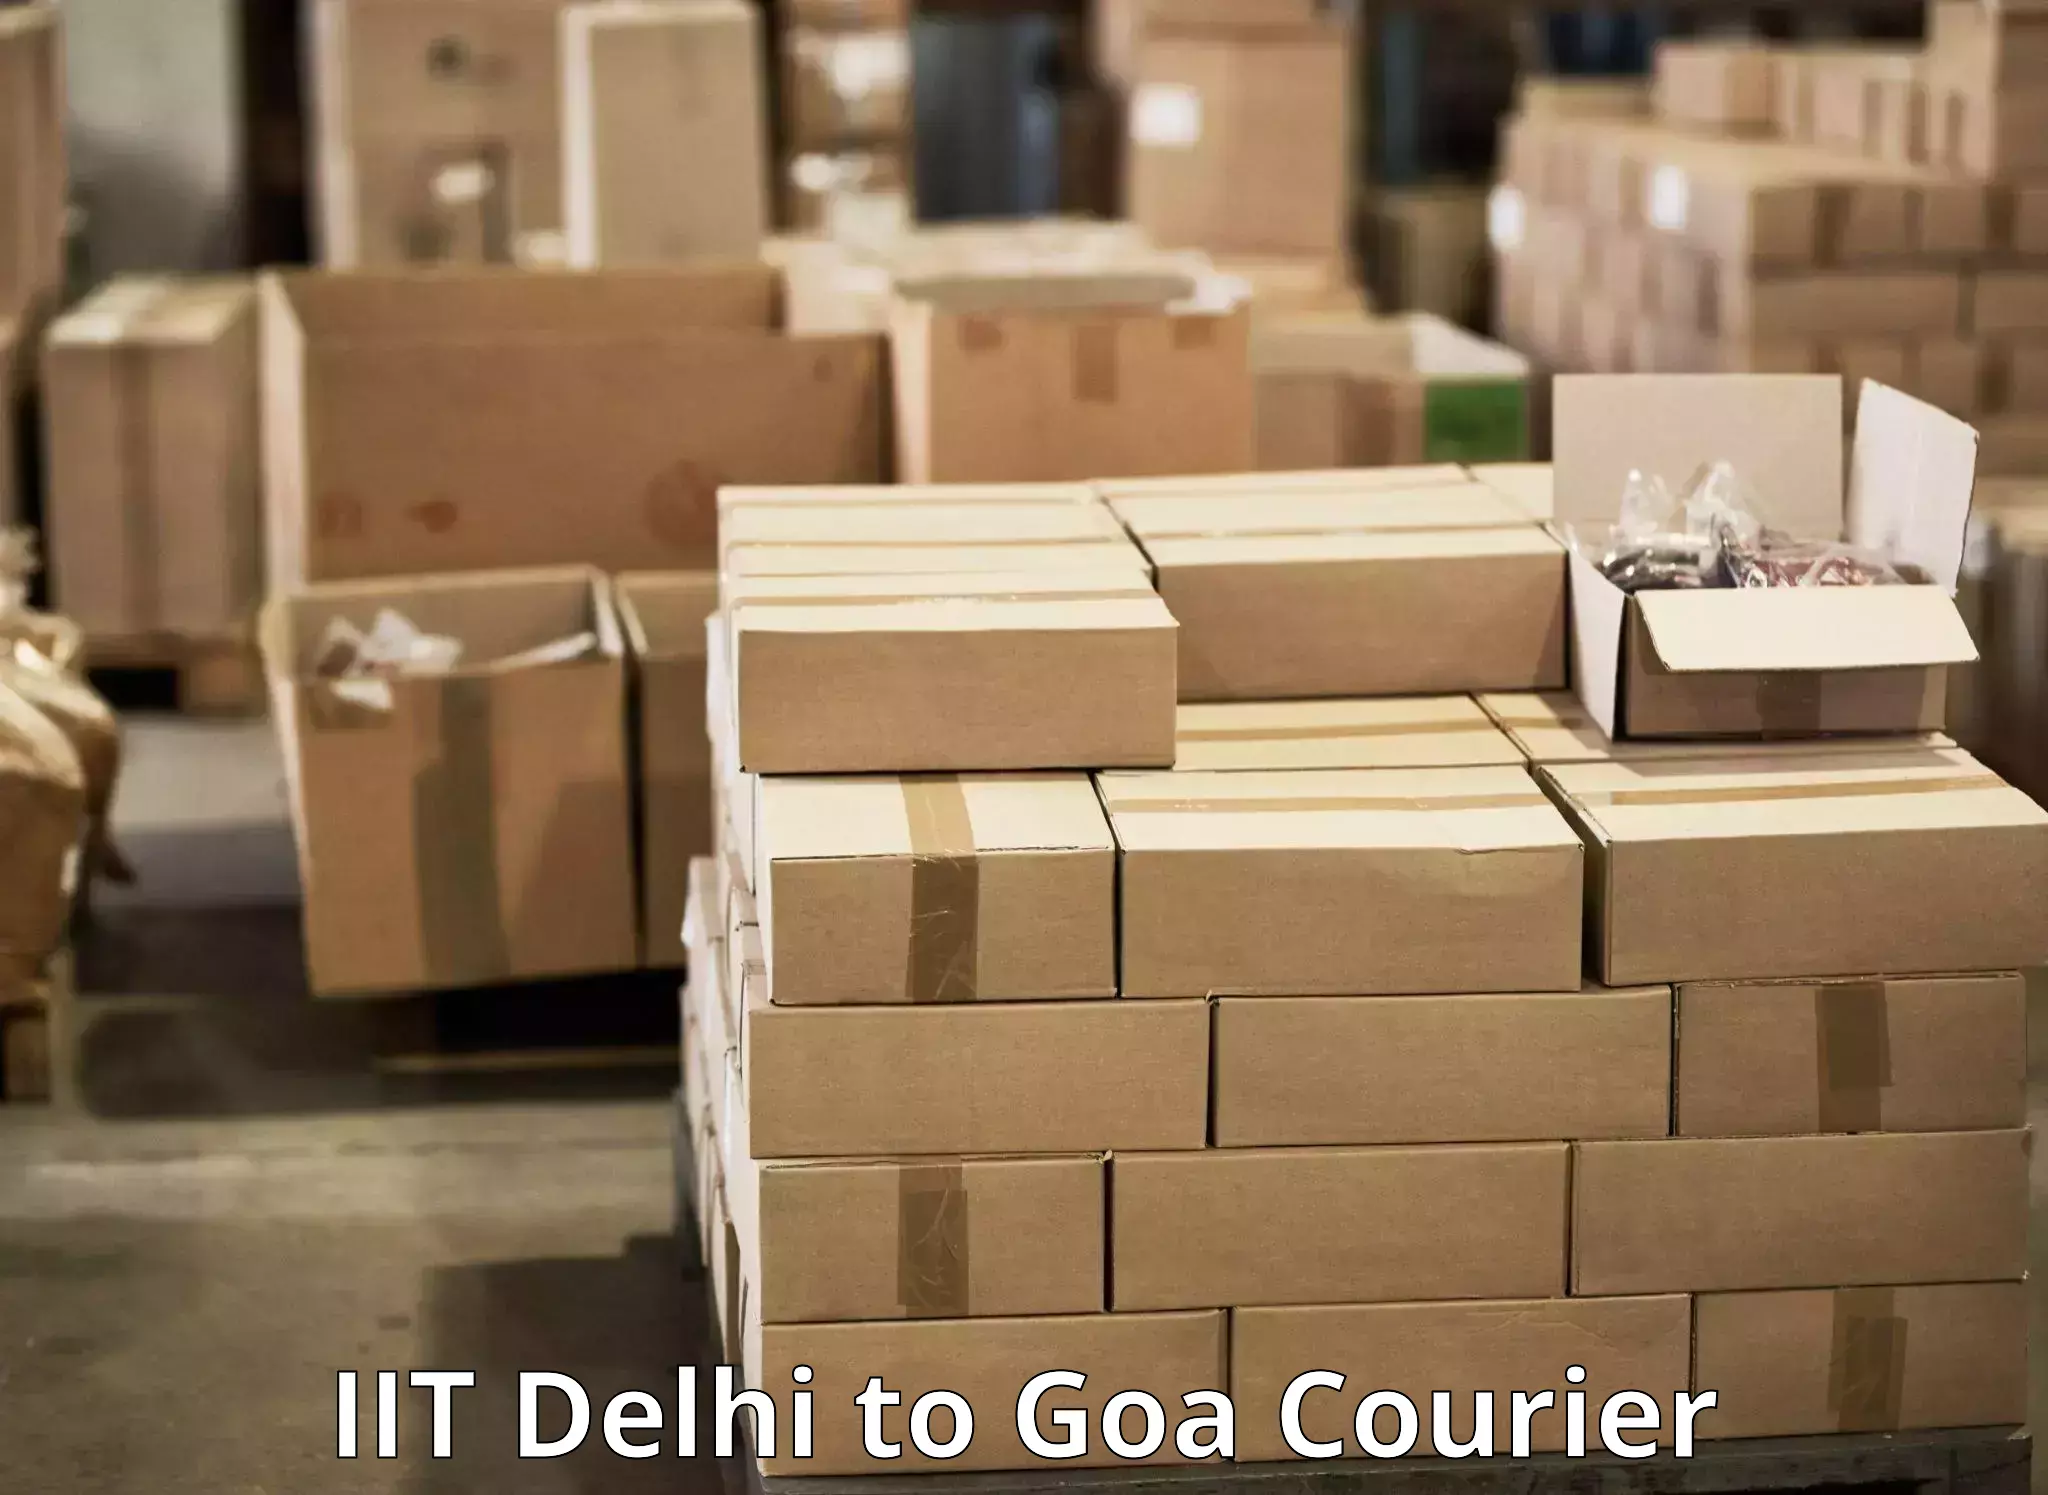 Corporate courier solutions IIT Delhi to IIT Goa